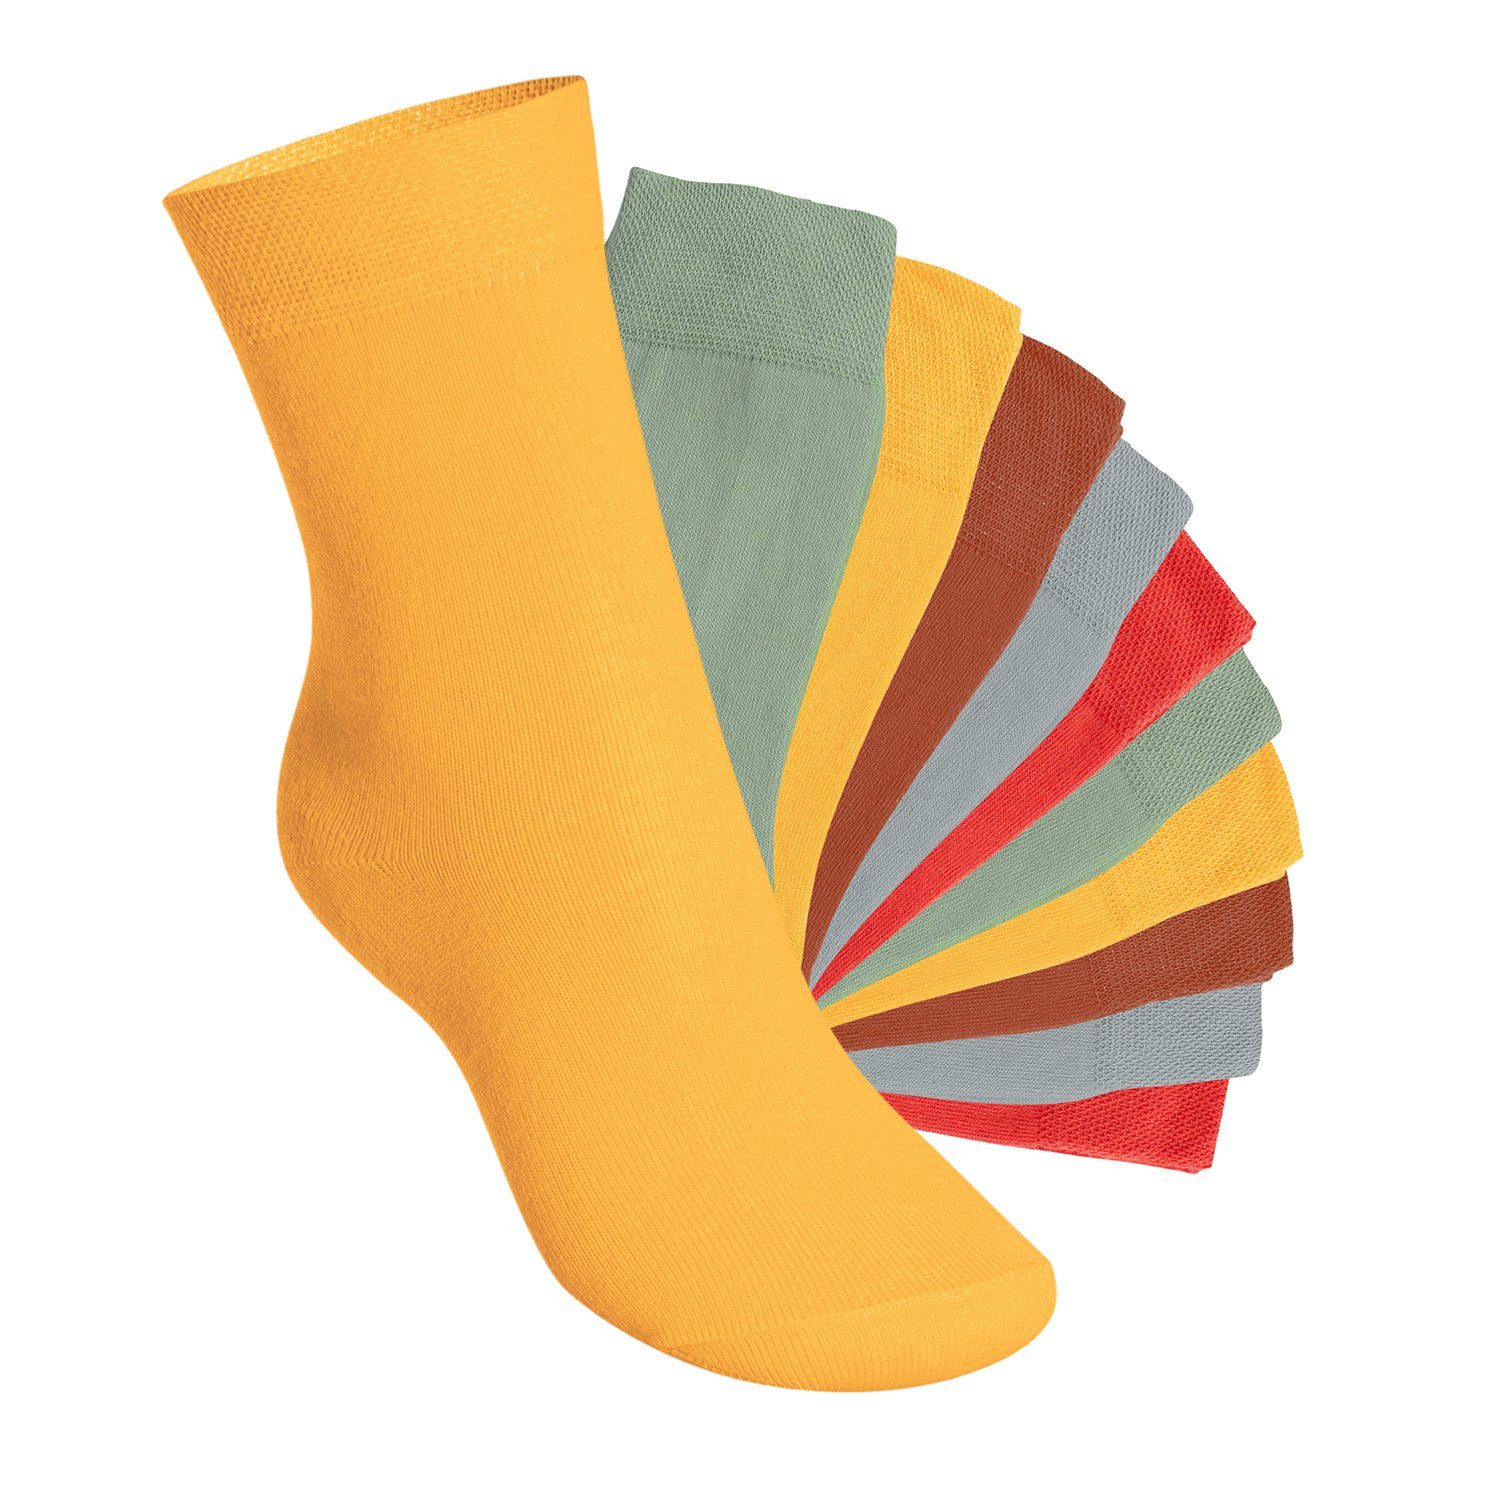 Footstar Basicsocken Everyday! Kinder Socken (10 Paar) für Jungen & Mädchen Urban Camouflage